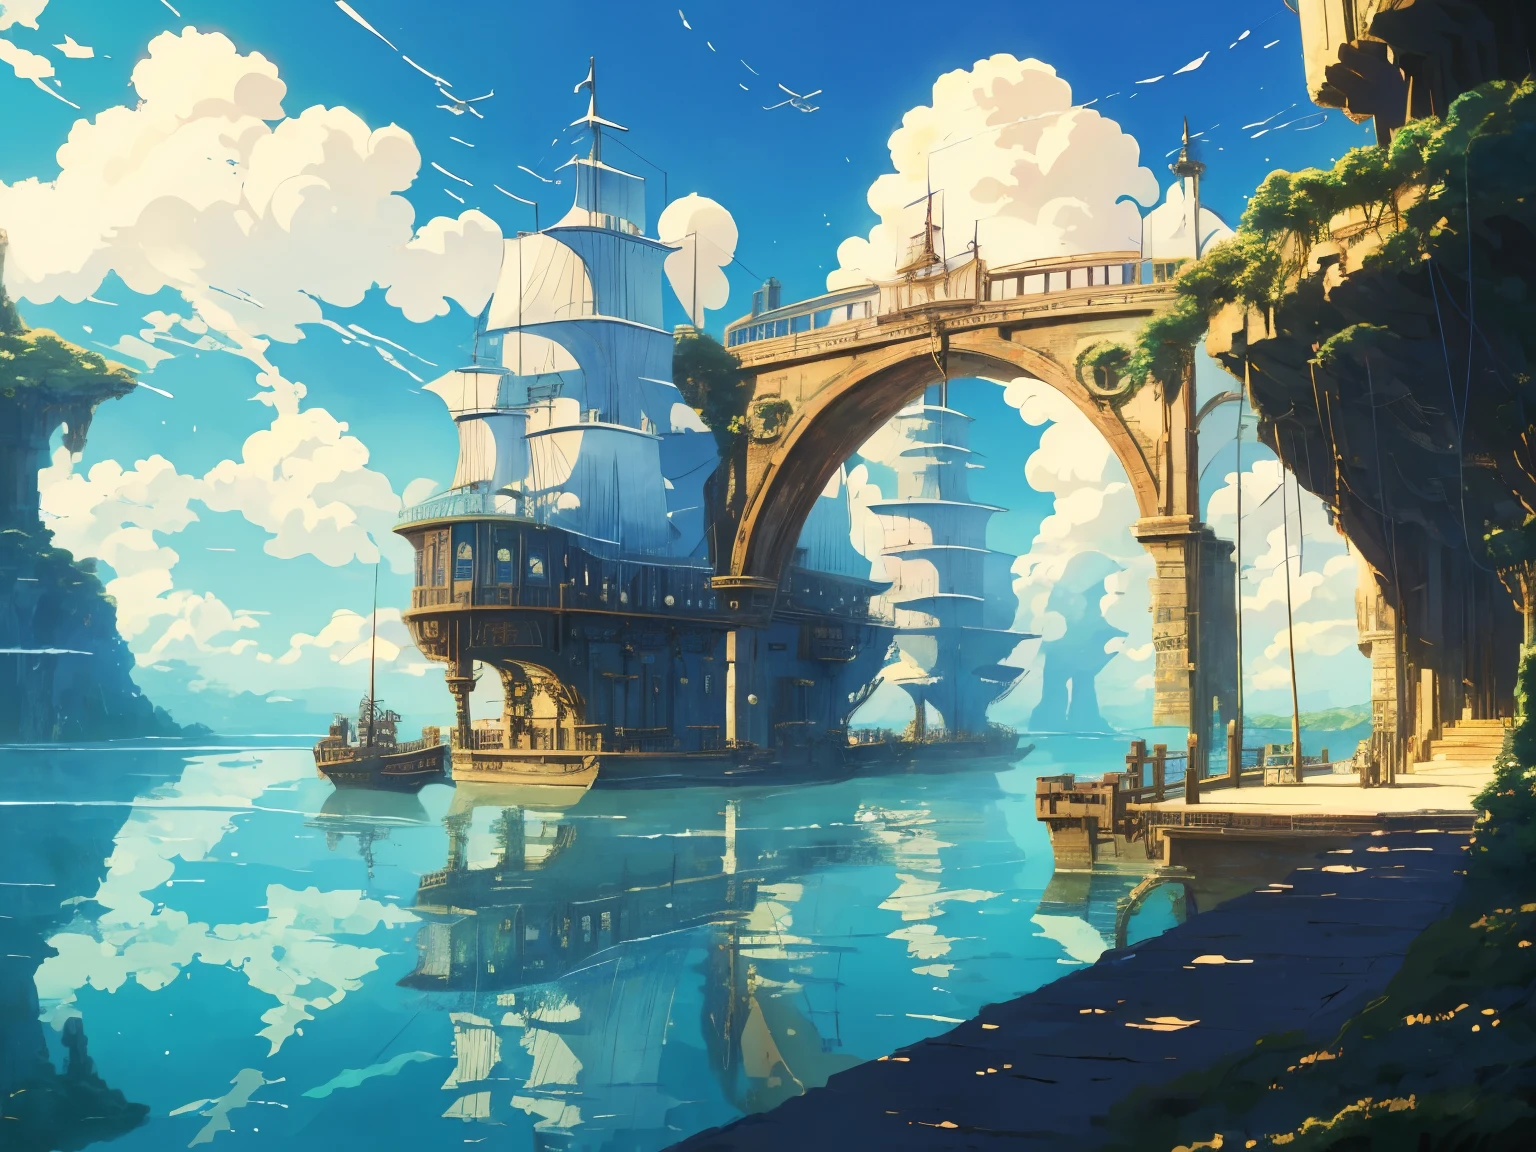 สกรีนช็อตดีวีดีจากภาพยนตร์ของสตูดิโอจิบลิ, ภายในสะพาน Steampunk ริมทะเลที่สวยงาม, เมฆบนท้องฟ้าสีฟ้า, ออกแบบโดยฮายาโอะ มิยาซากิ, อะนิเมะย้อนยุค